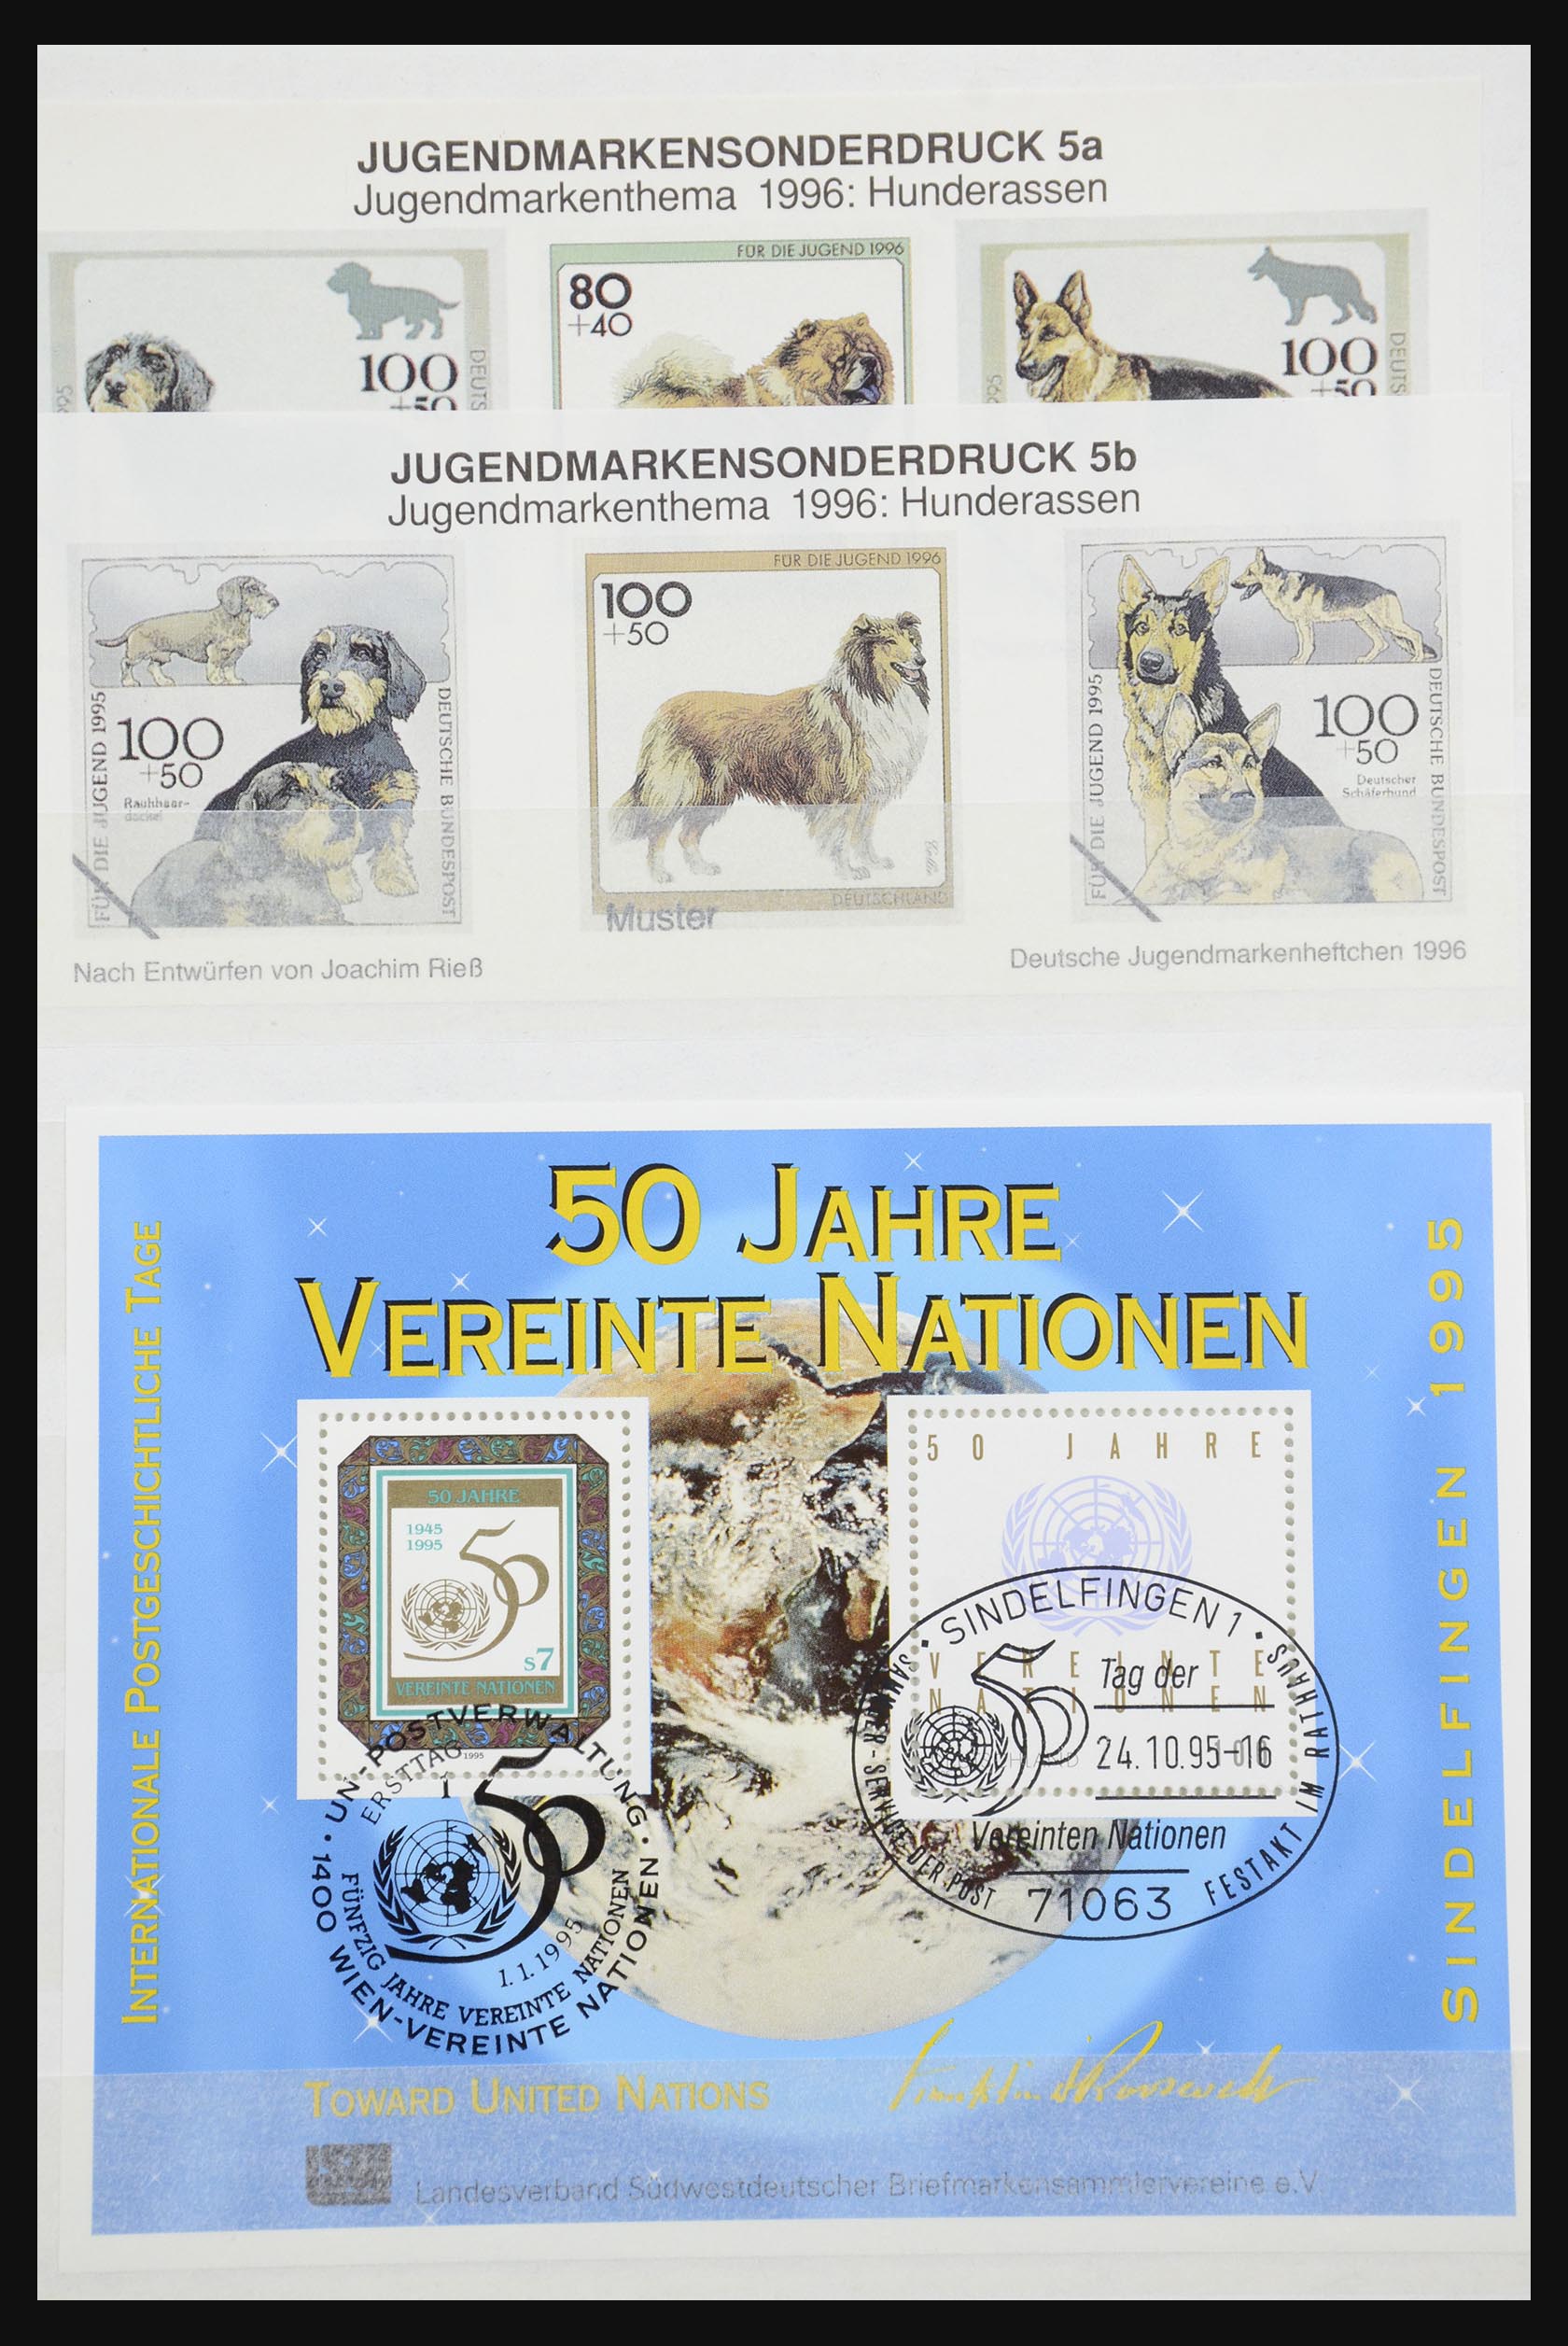 32050 056 - 32050 Bundespost speciale blokken 1980-2010.